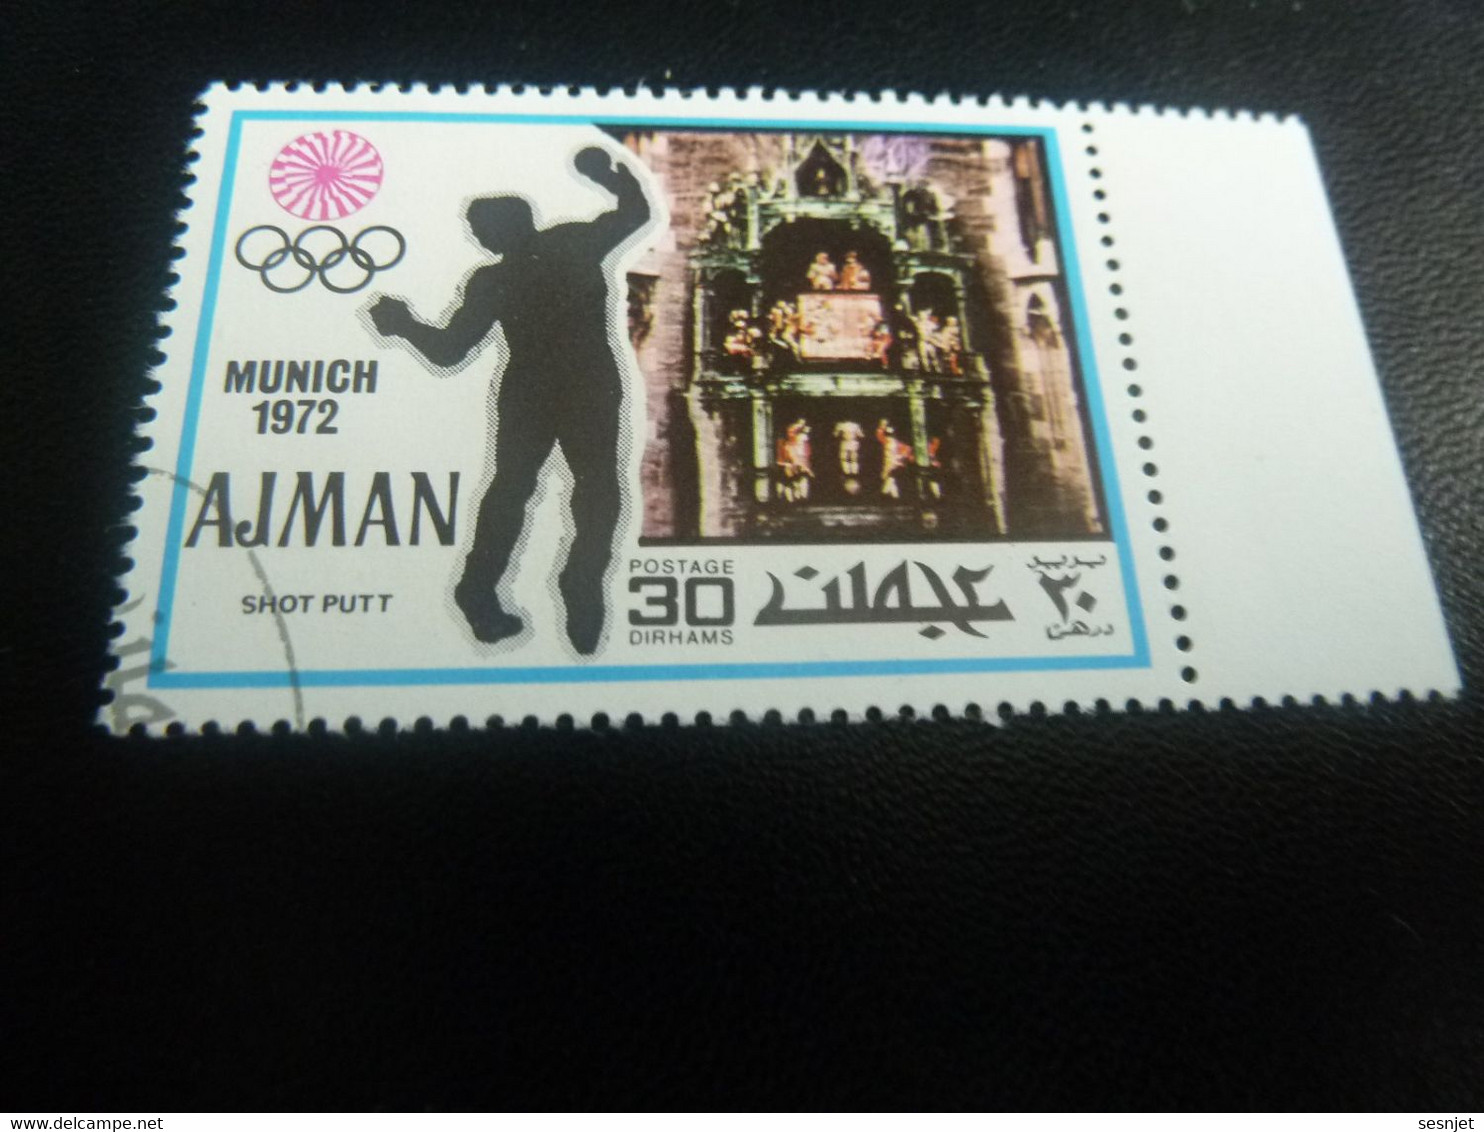 Ajman - Munich - Shot Putt - 30 Dirhams - Postage - Multicolore - Oblitéré - Année 1972 - - Handball